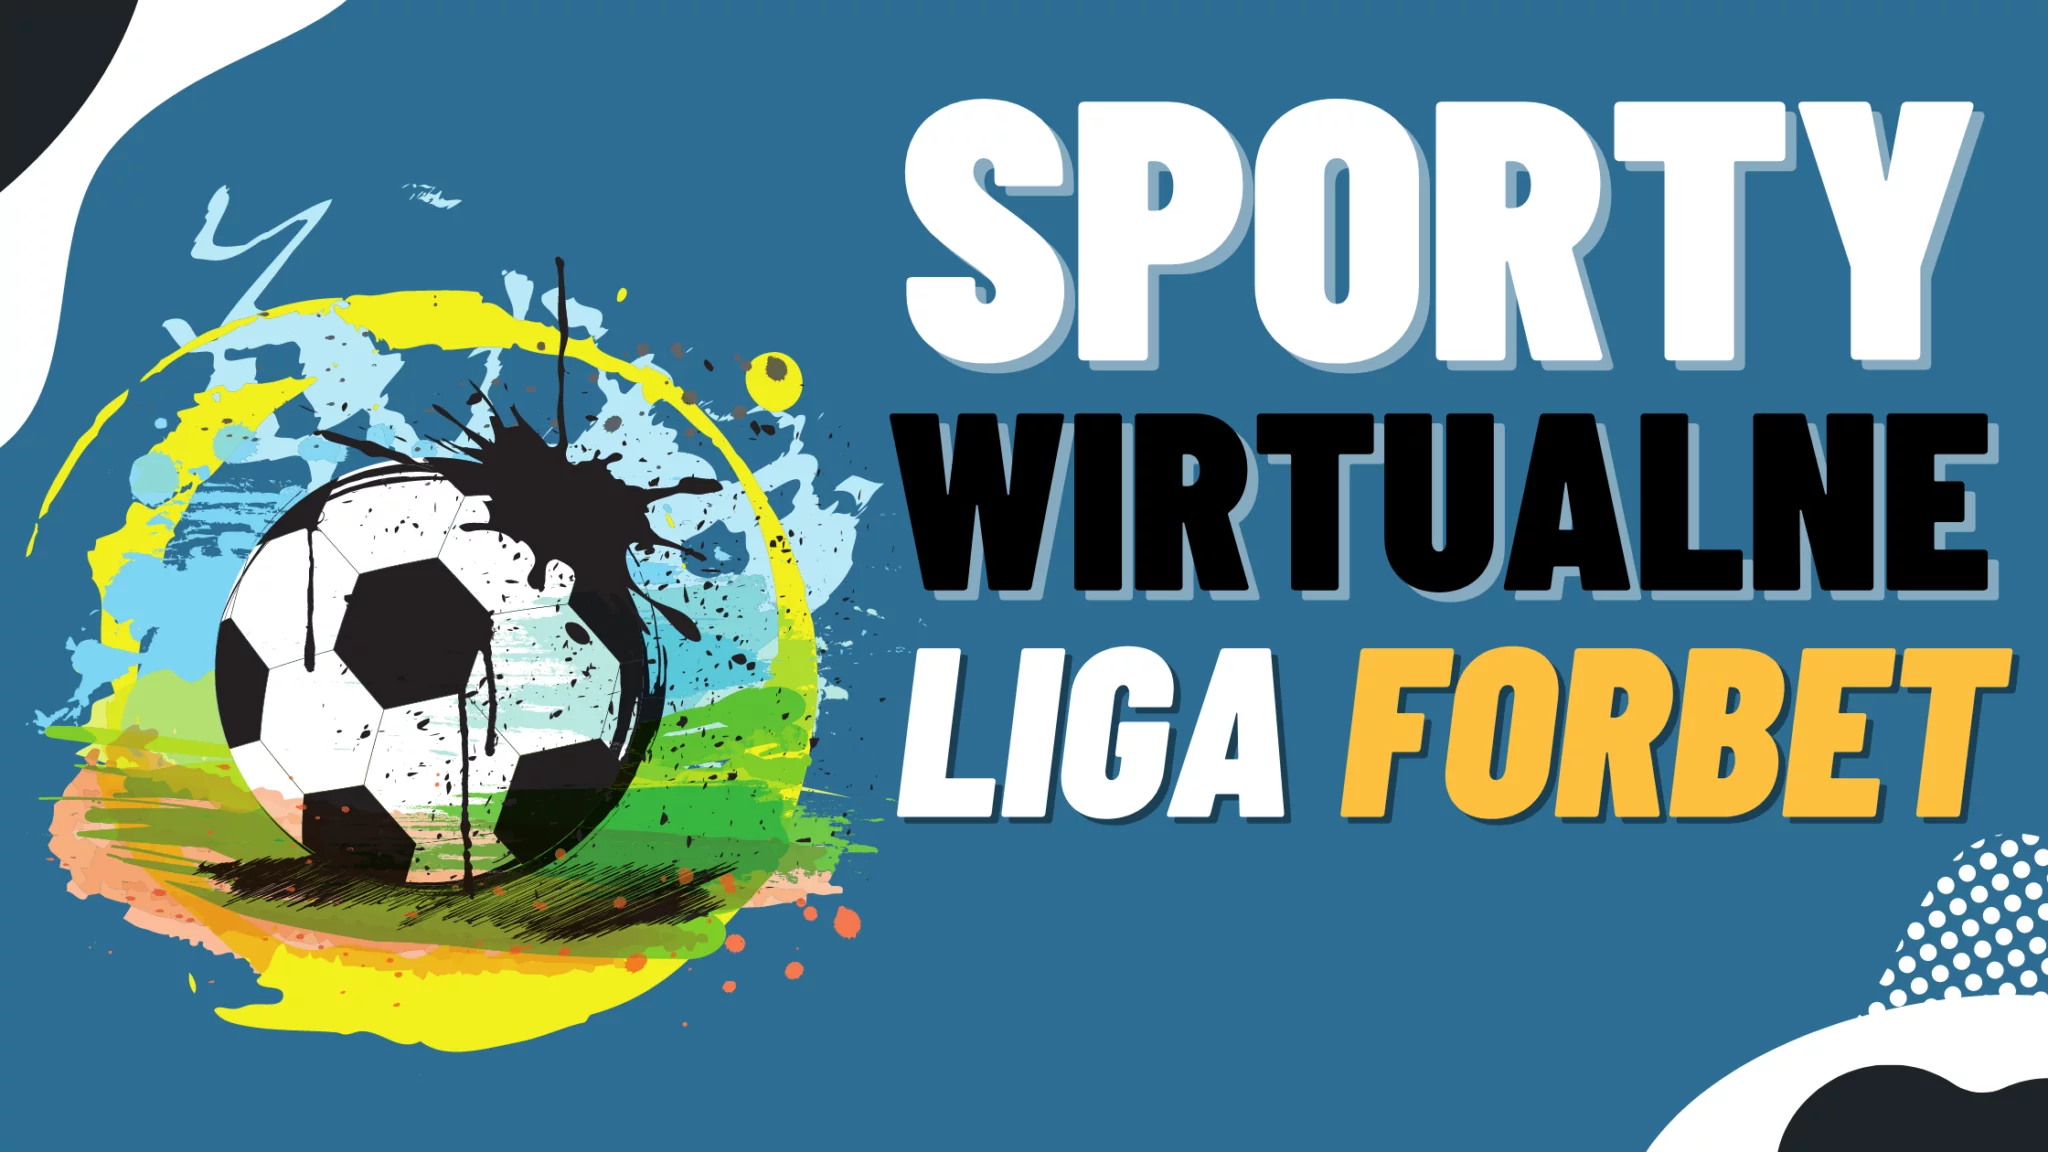 Legalny bukmacher ForBet sporty wirtualne - Liga Forbet